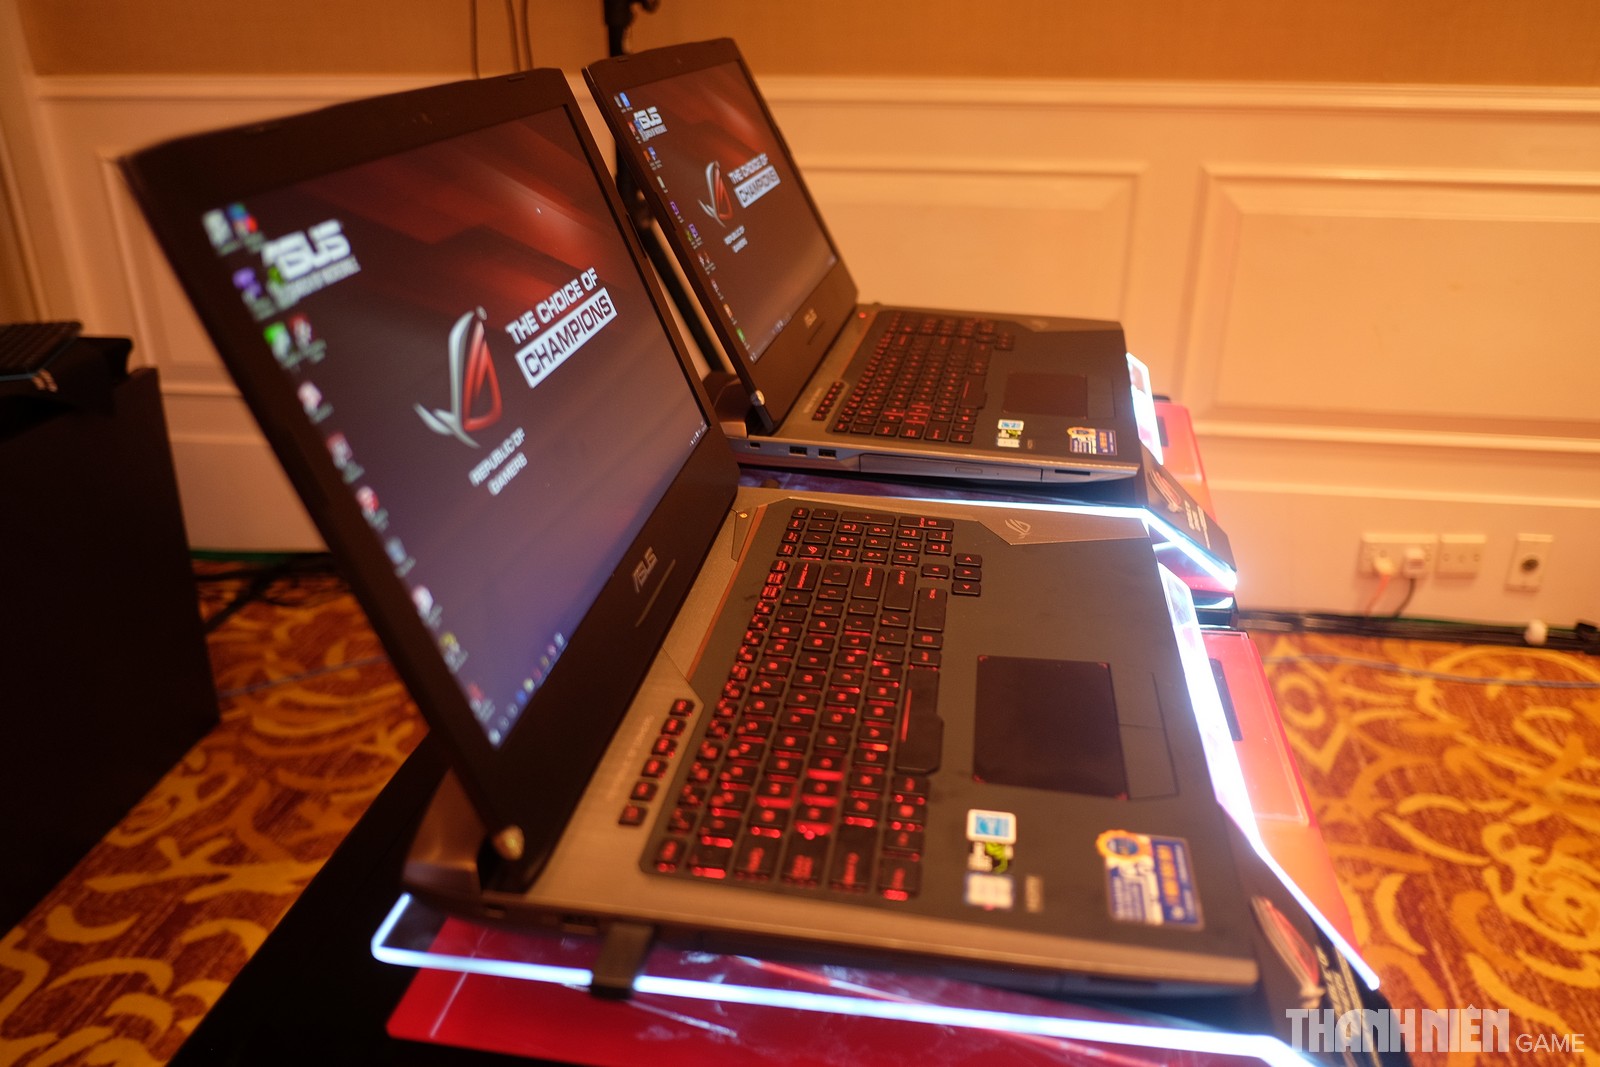 ASUS ra mắt laptop chơi game chủ lực G752: Thay đổi cho tương lai